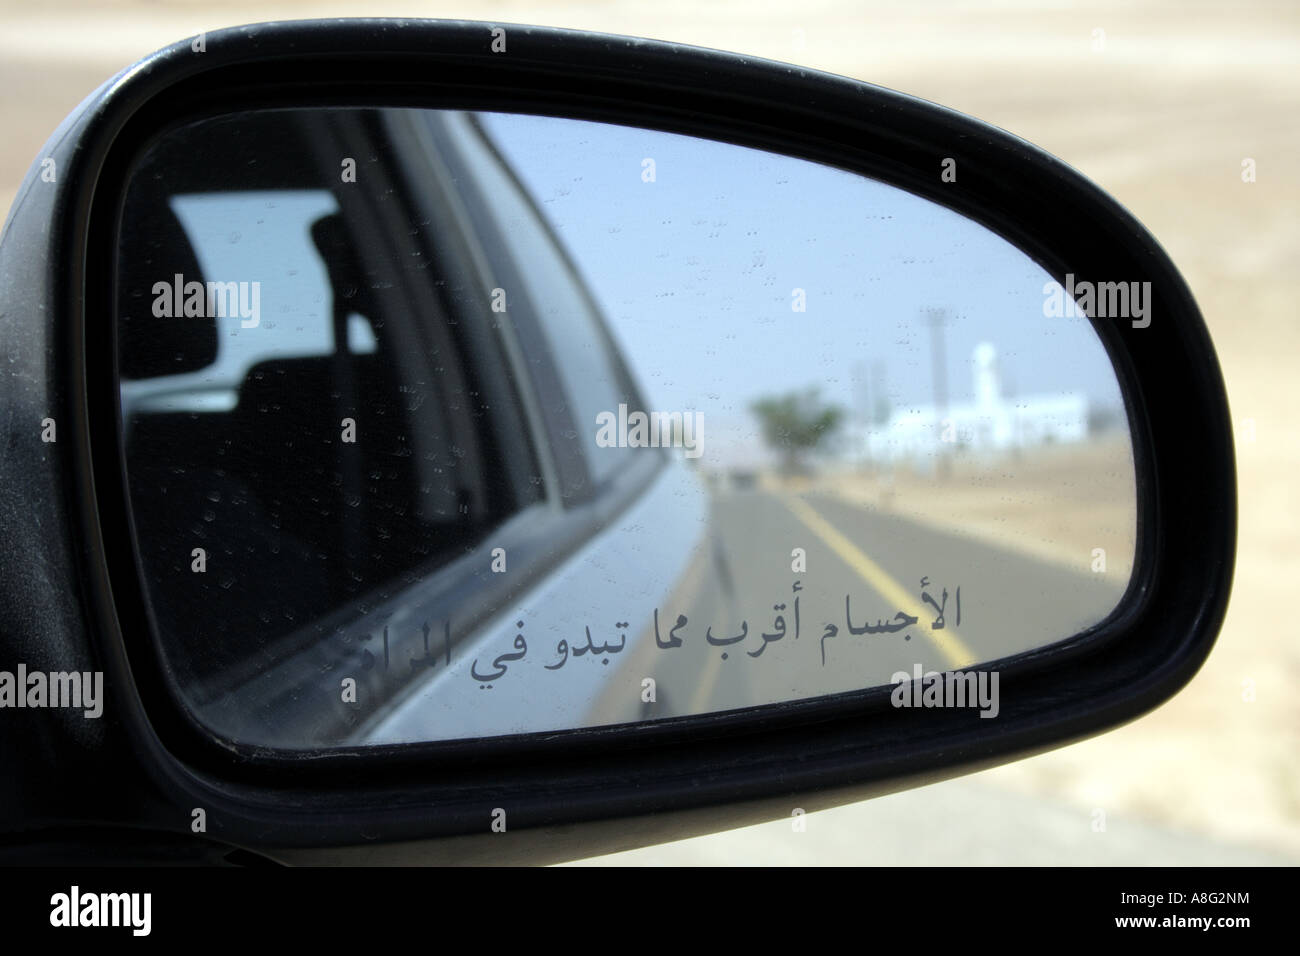 Dubai-Spiegel des Autos mit arabischen Buchstaben Objekte im Spiegel sind  näher als sie erscheinen. Foto: Willy Matheisl Stockfotografie - Alamy